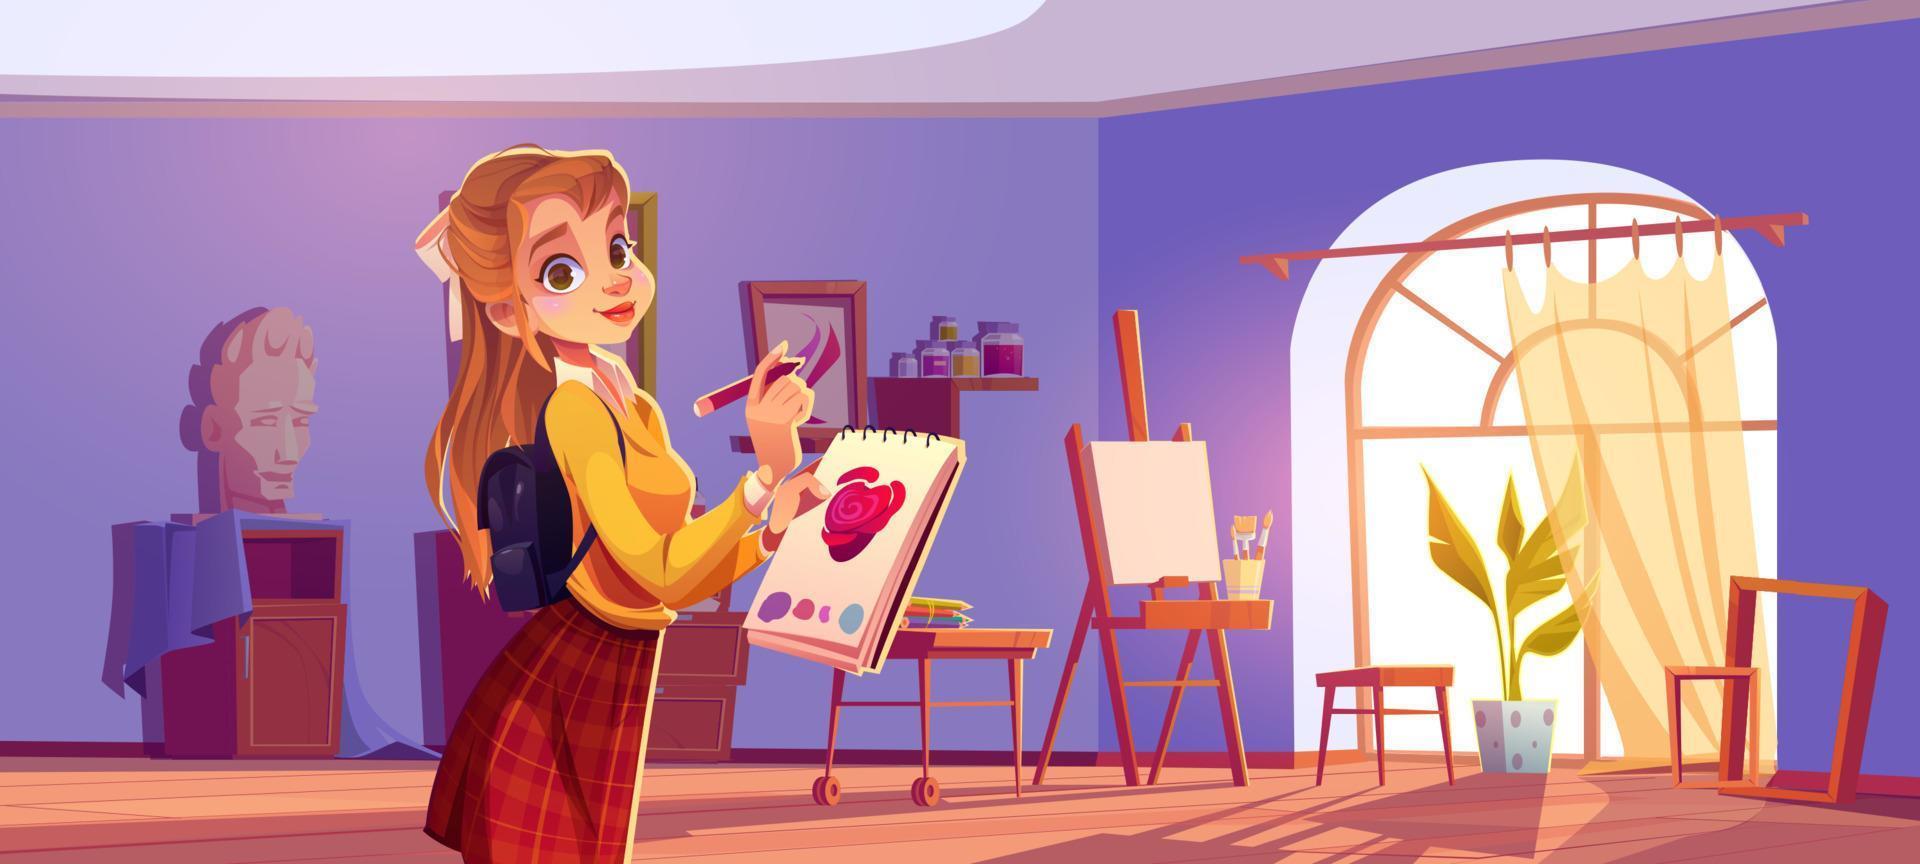 pintora de menina em estúdio de arte com telas e pincéis vetor